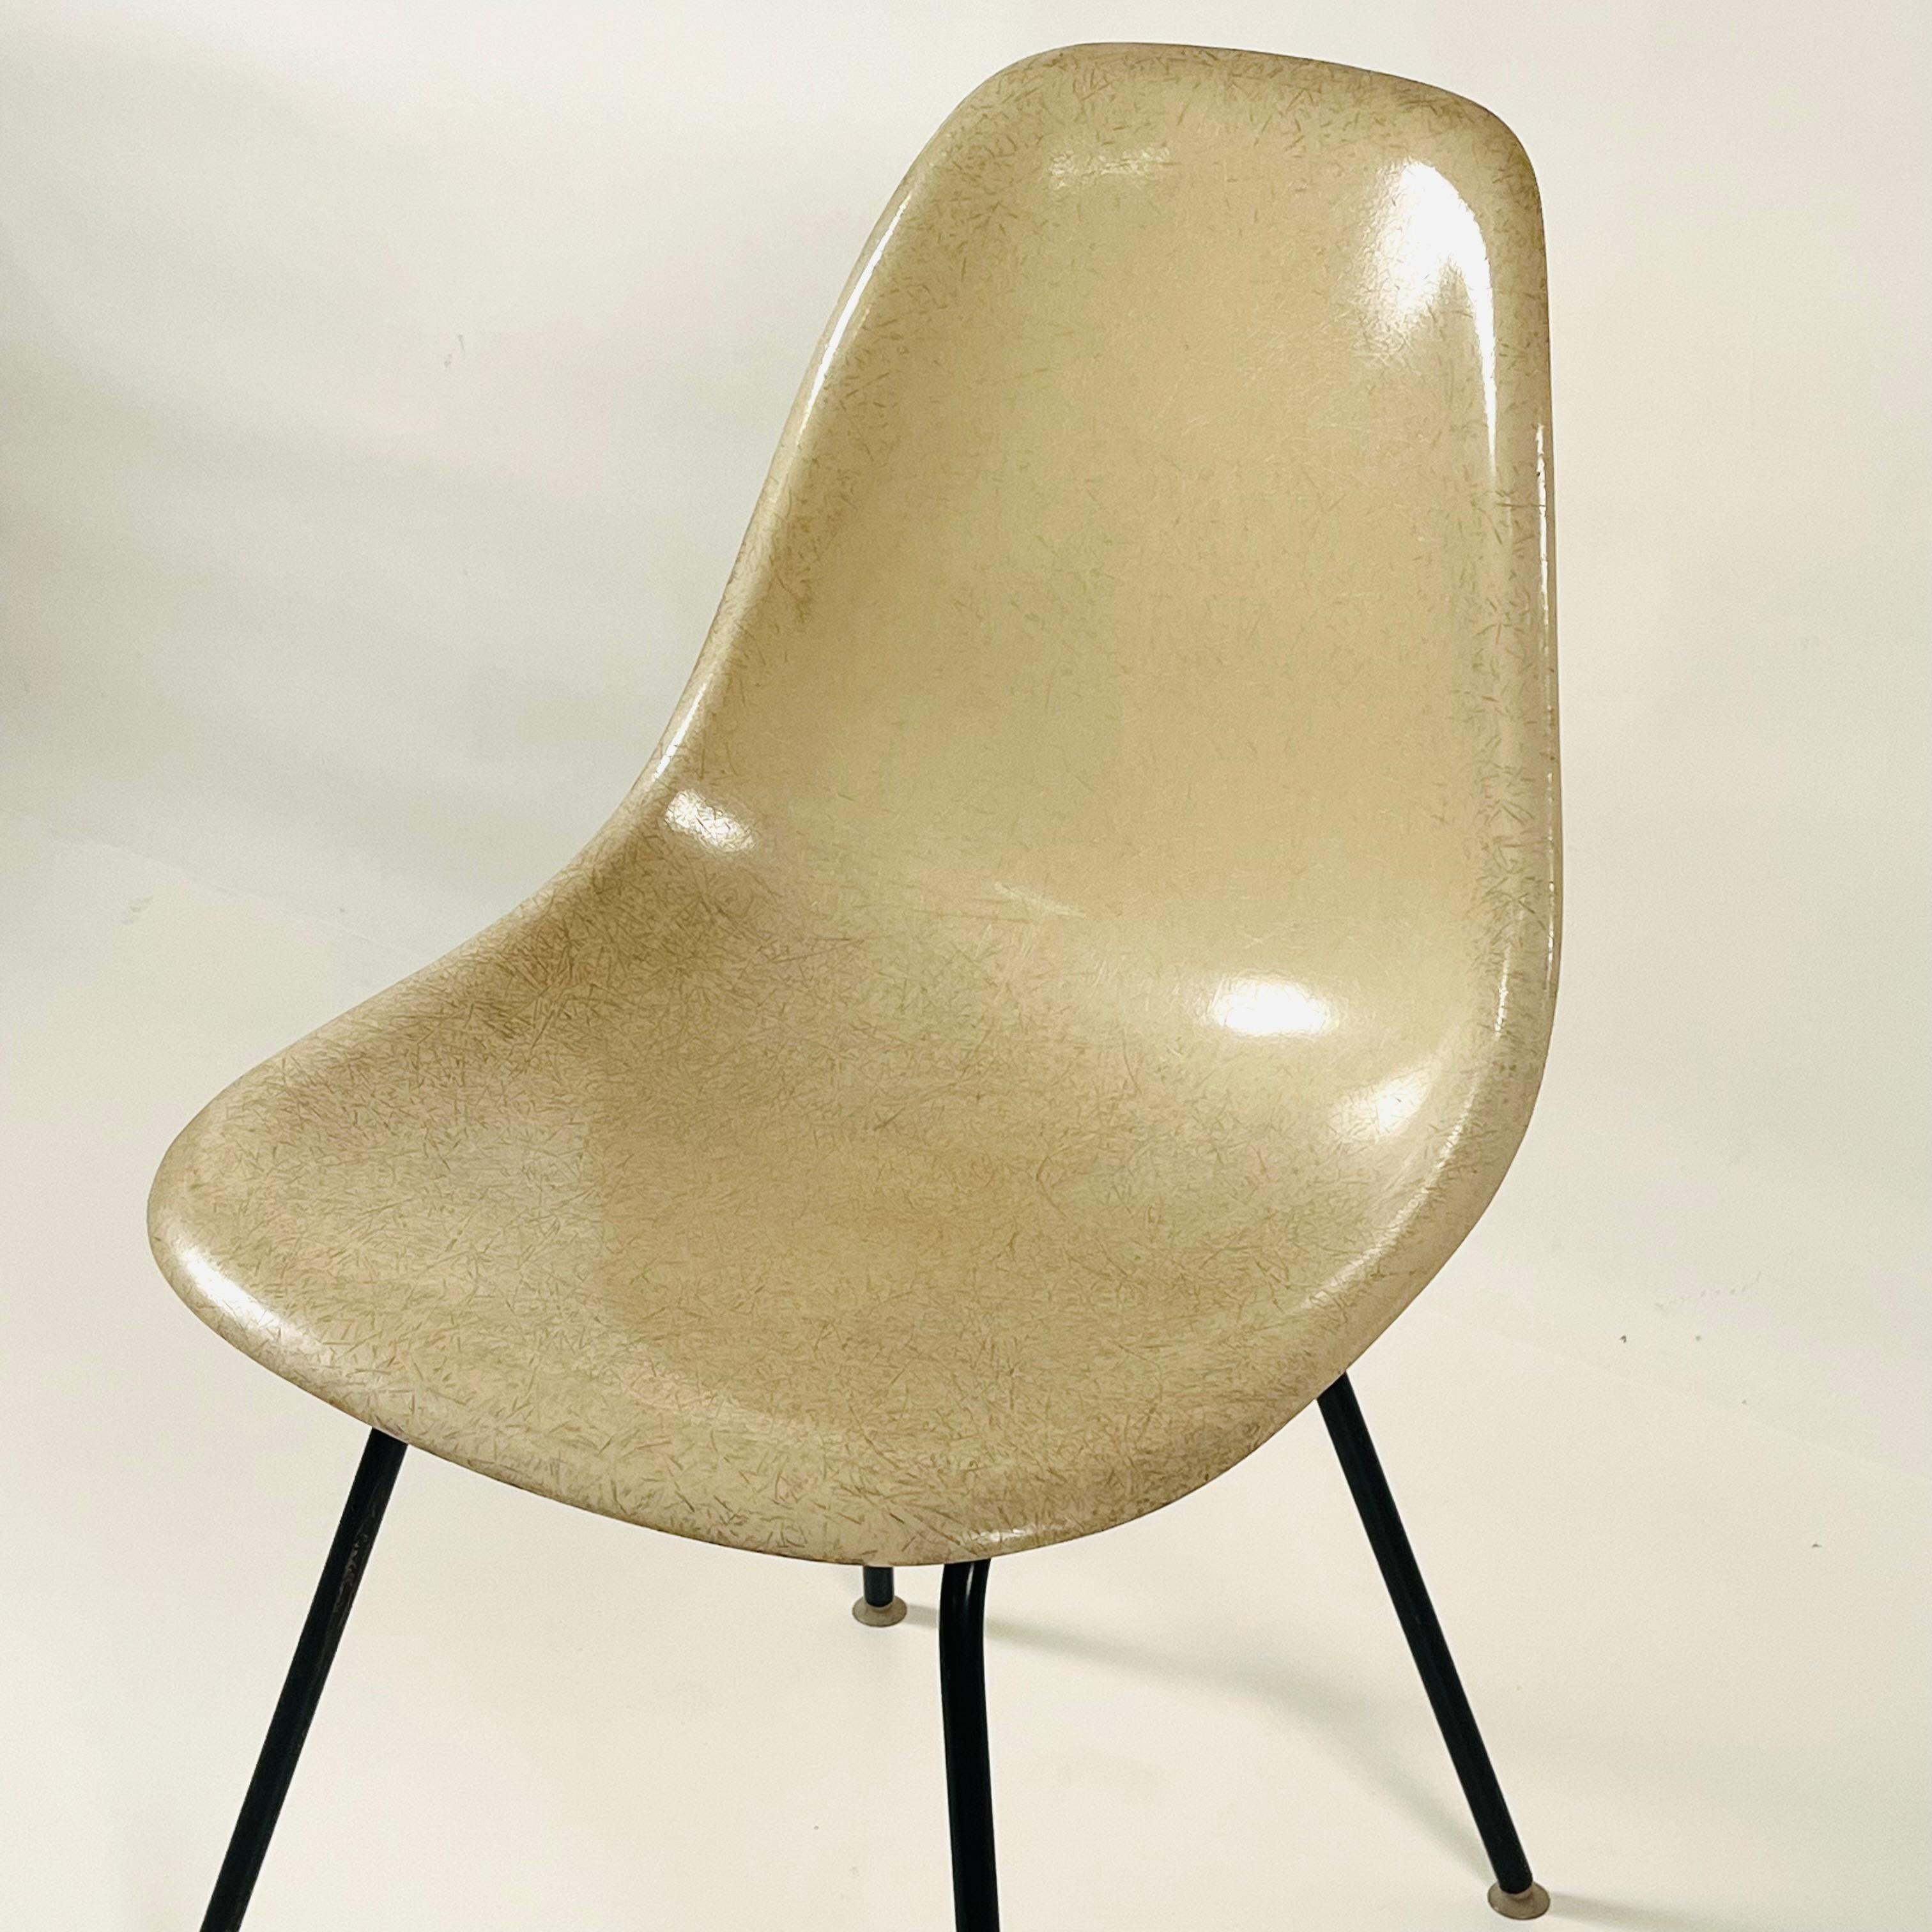 Ensemble de 4 chaises Eames vintage en fibre de verre blanc par Herman Miller. Il s'agit d'une édition originale et non d'une édition récente. Estampillé sous.